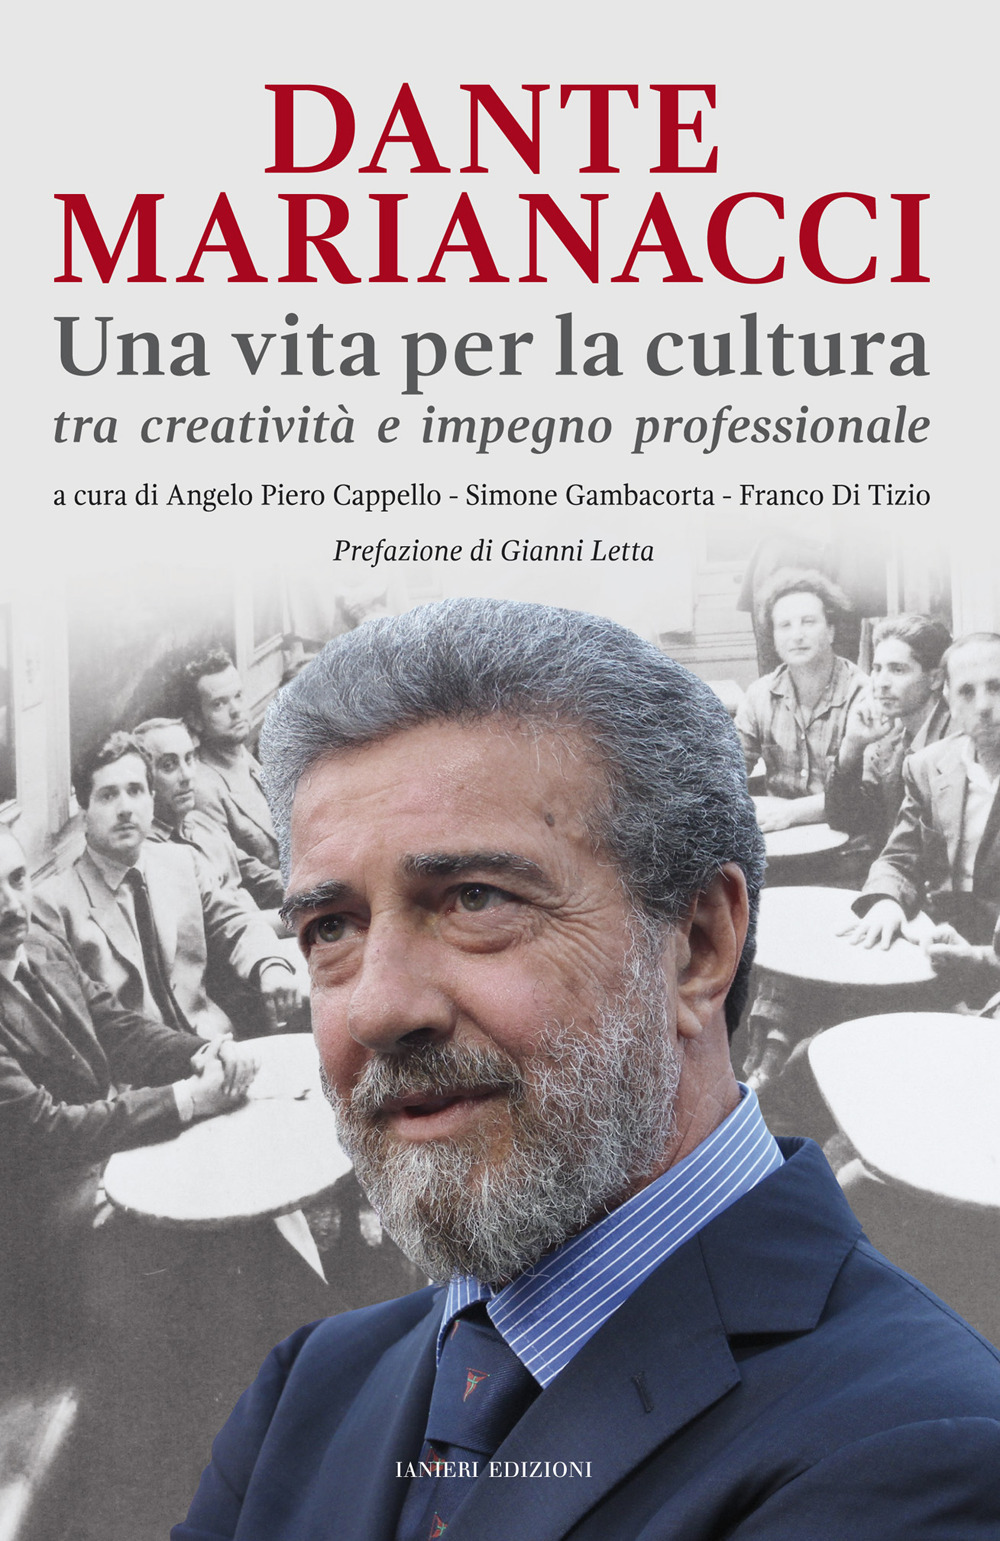 Dante Marianacci. Una vita per la cultura tra creatività e impegno professionale. Bibliografia essenziale 1970-2020